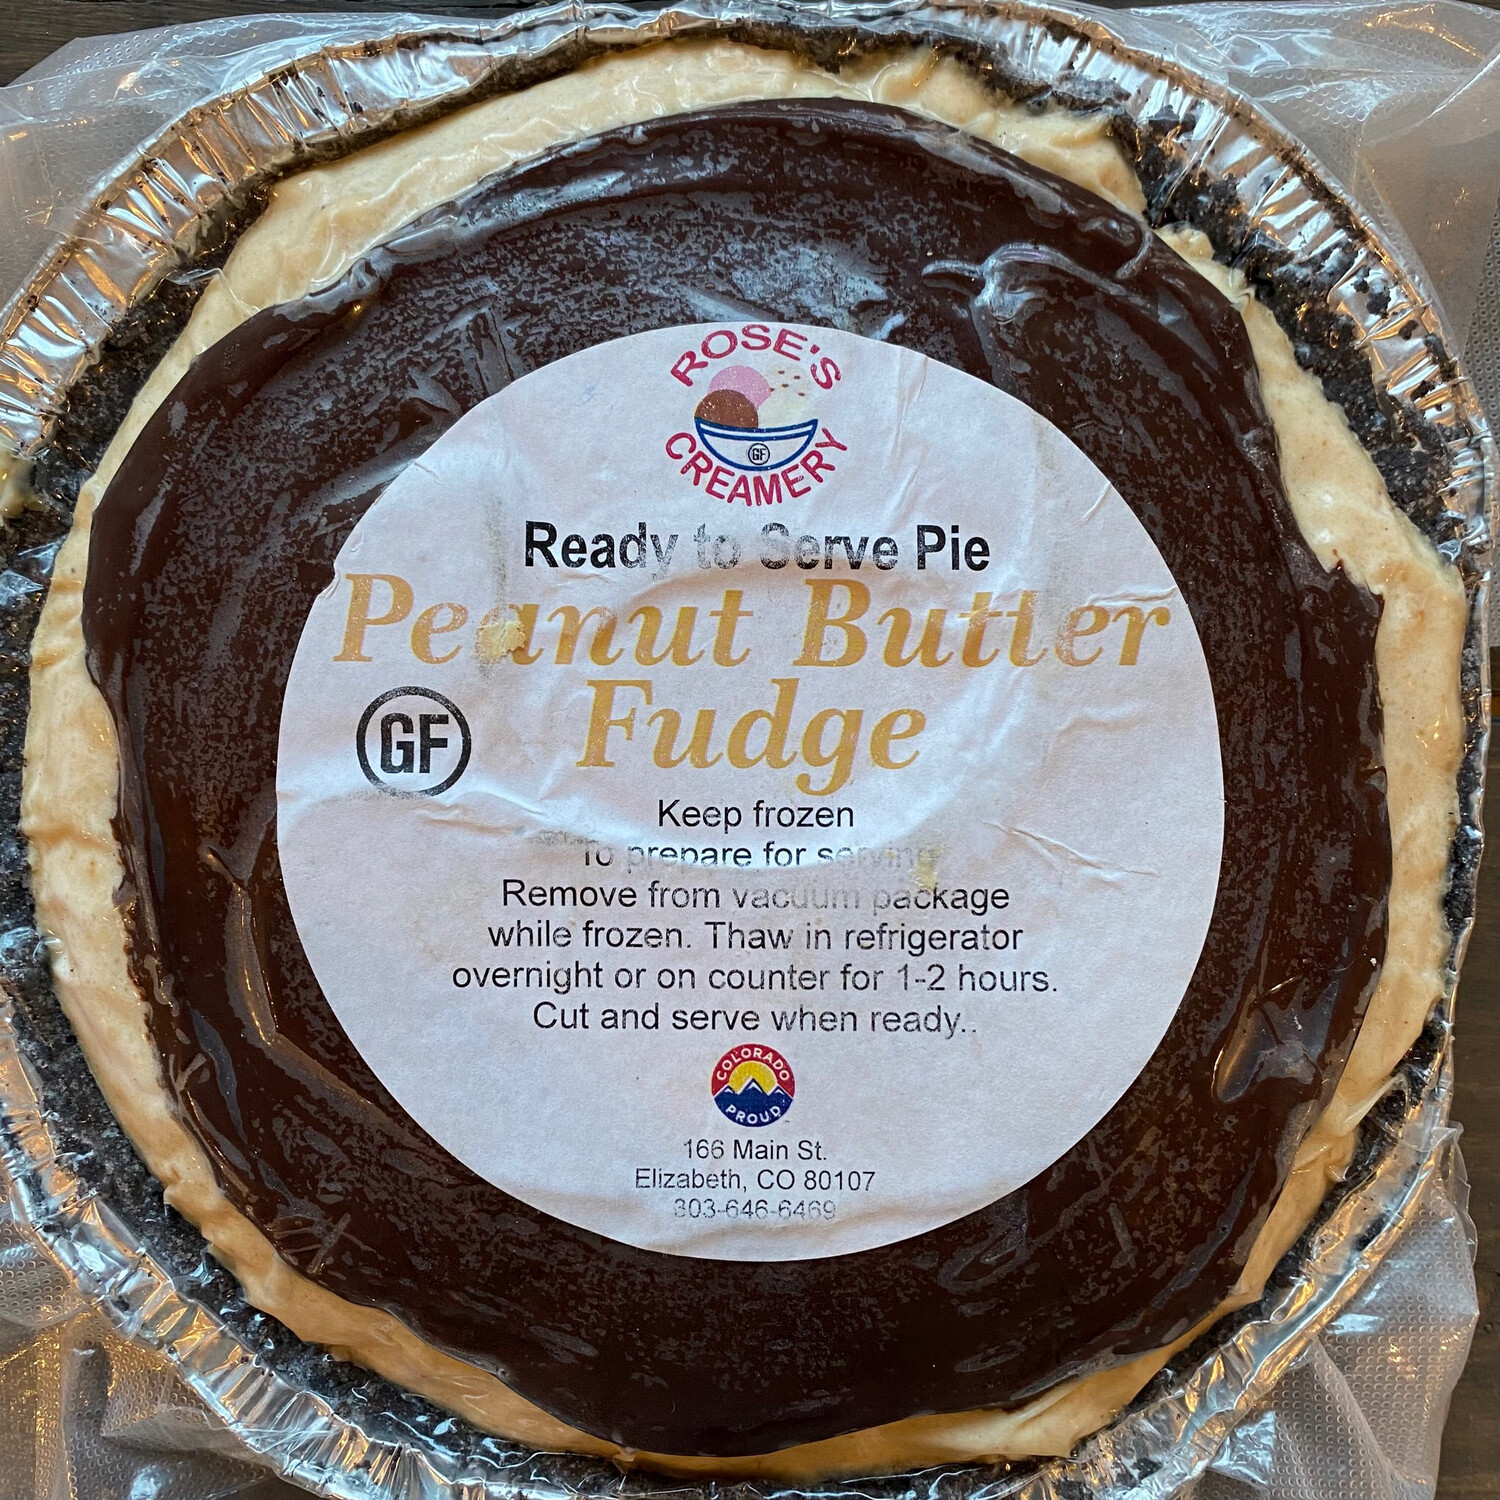 Roses GF PB Fudge Pie